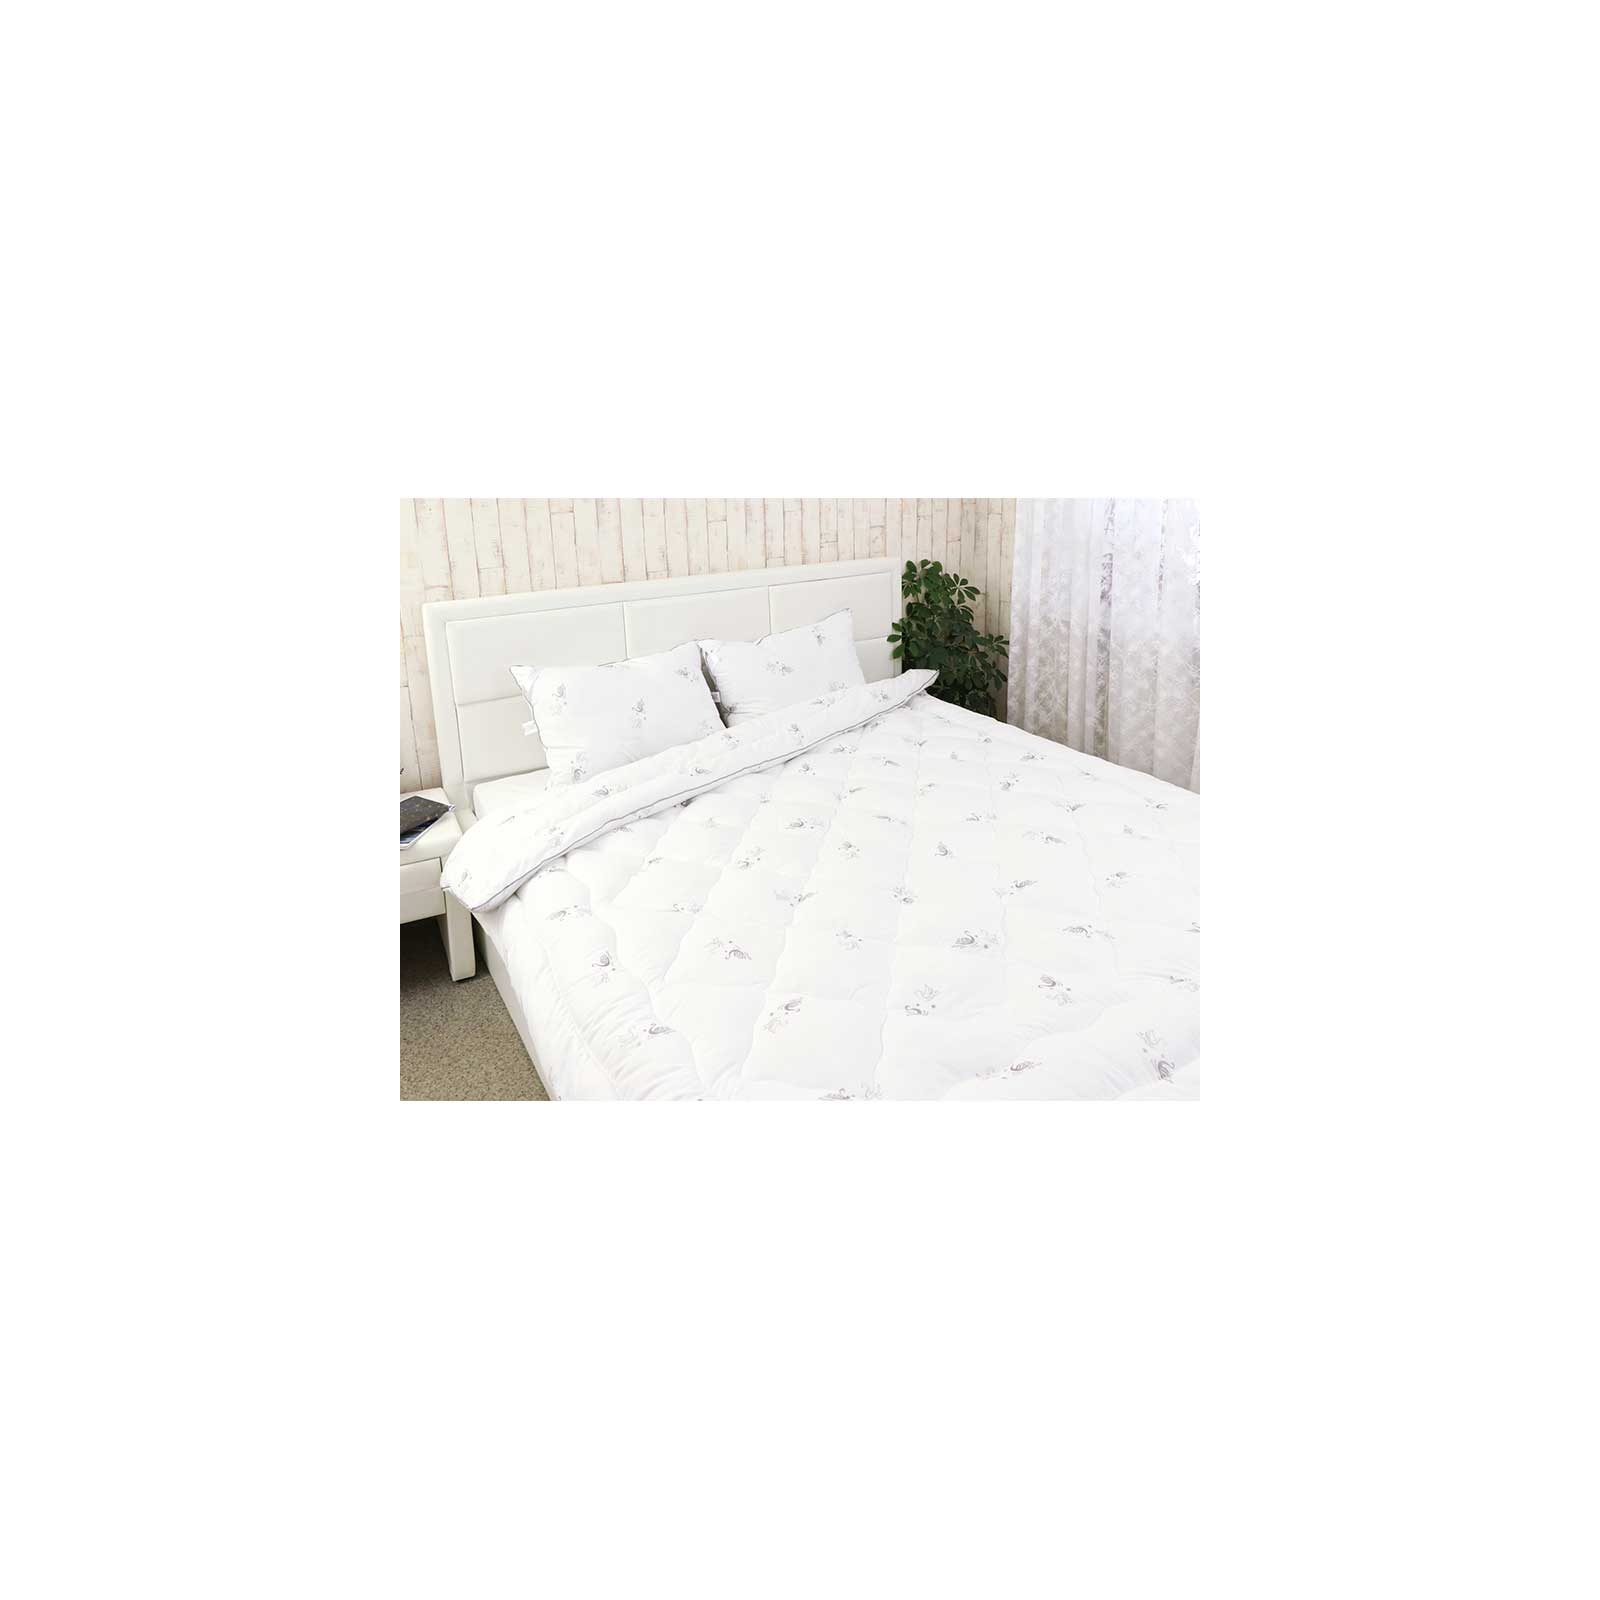 Одеяло Руно набор Одеяло зима из искусственного лебединого пуха Silver Swan 200х220 см с двумя подушками 50х (925.52_Silver Swan) изображение 2